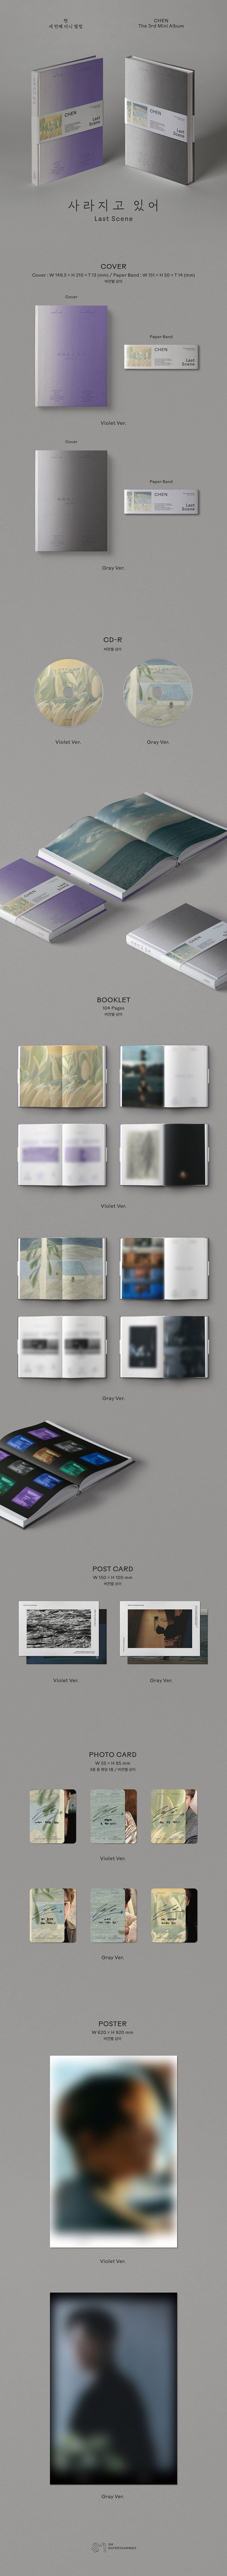 Chen - Última escena (tercer mini álbum) Photobook ver. | La compañía daebak